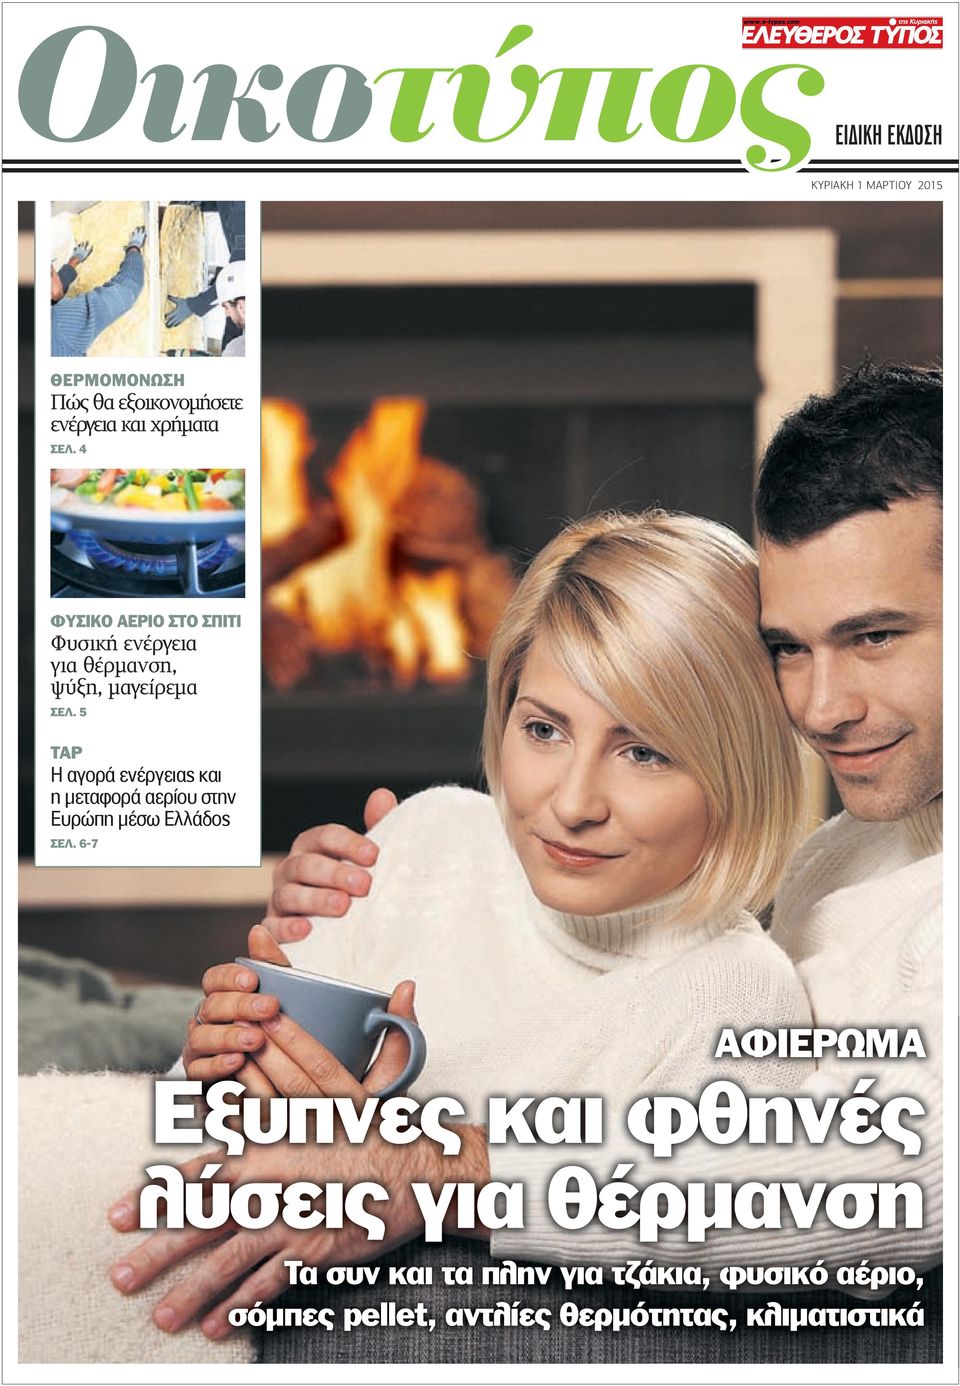 5 ΤΑΡ Η αγορά ενέργειας και η µεταφορά αερίου στην Ευρώπη µέσω Ελλάδος ΣΕΛ.